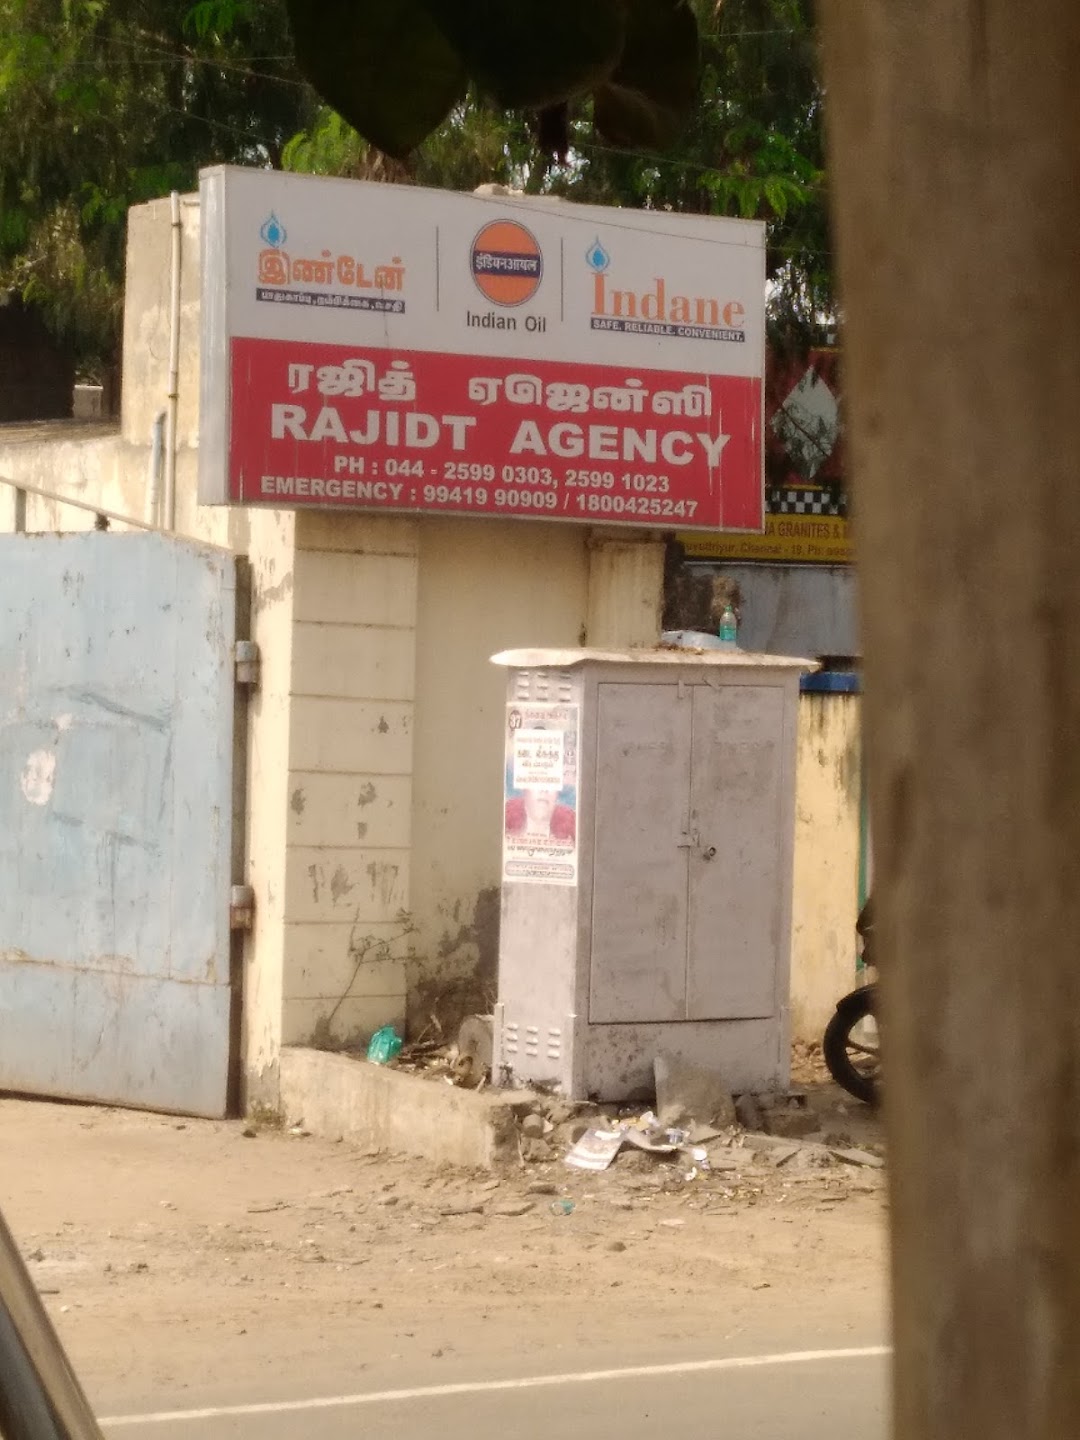 Rajidt Agency